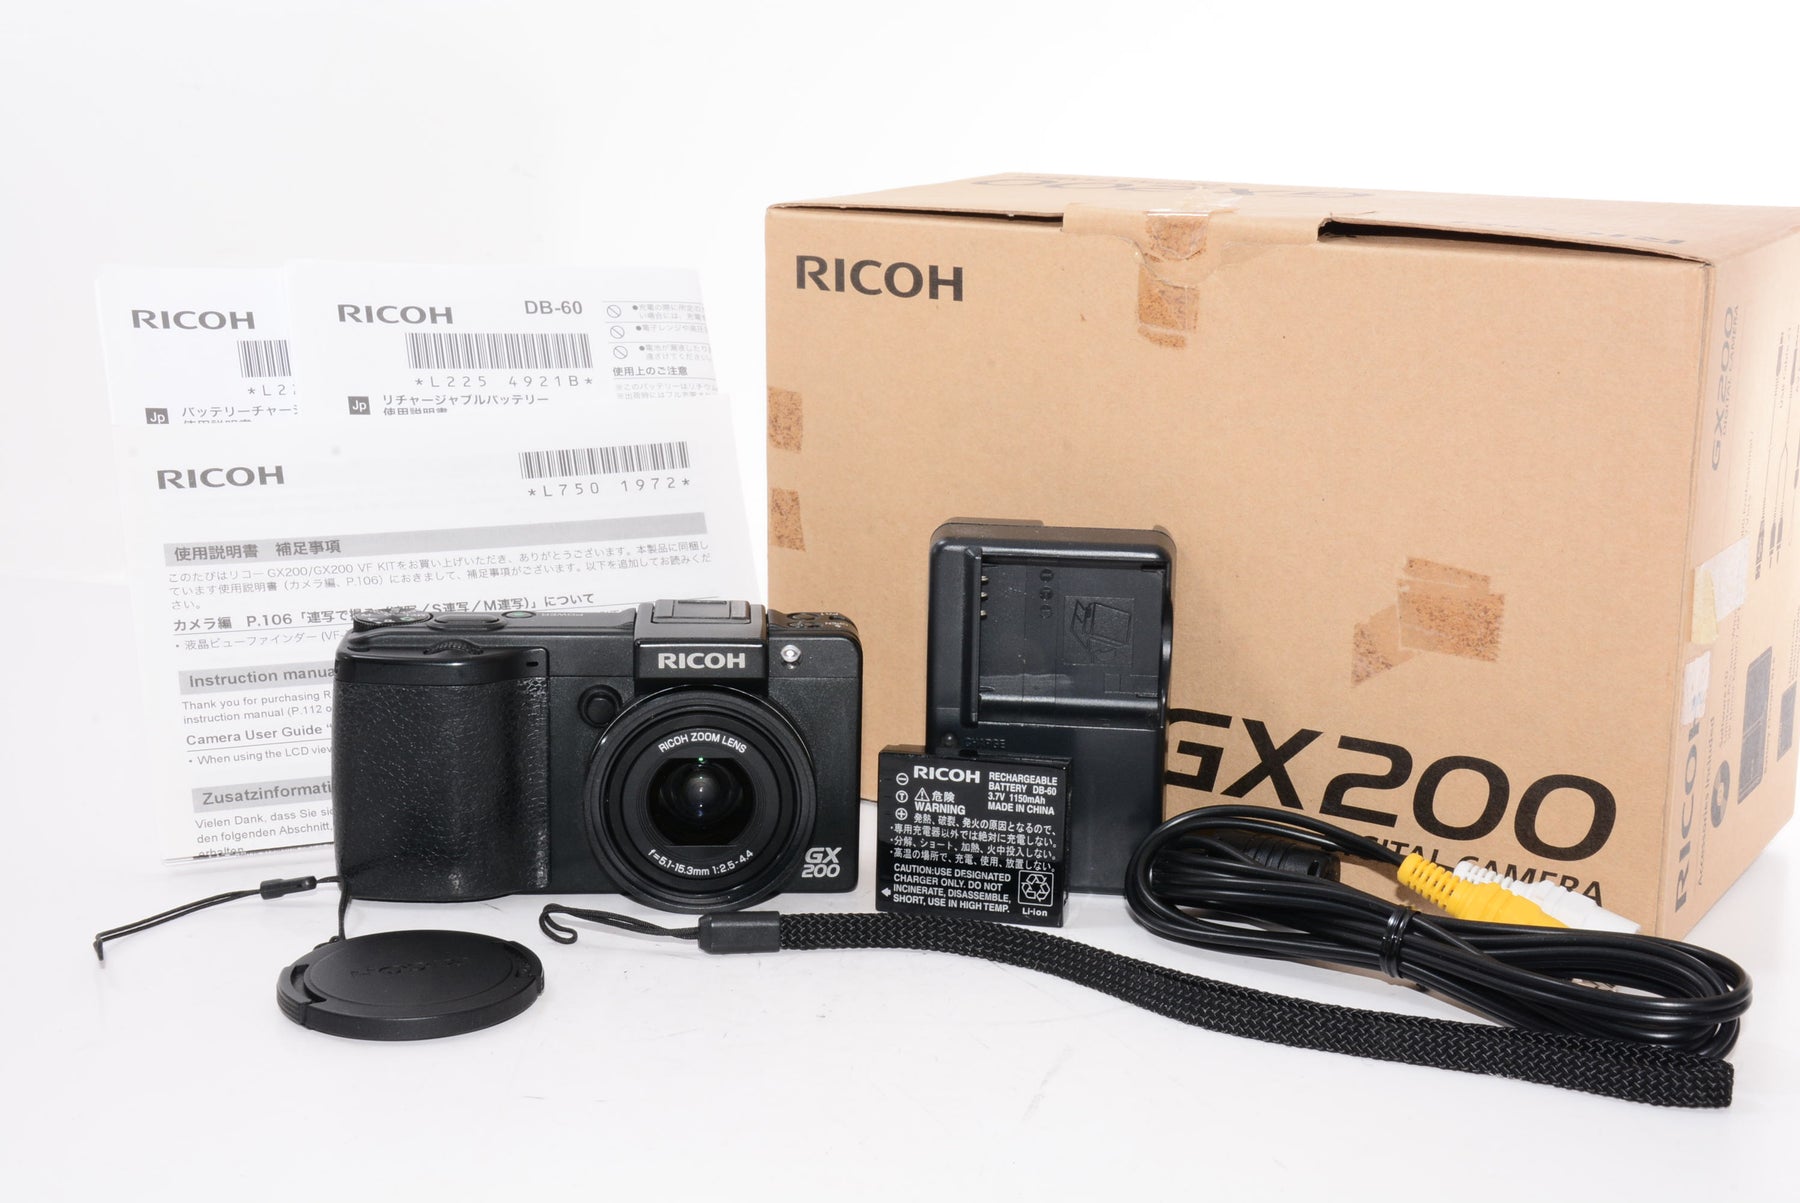 【外観特上級】RICOH デジタルカメラ GX200 ボディ GX200